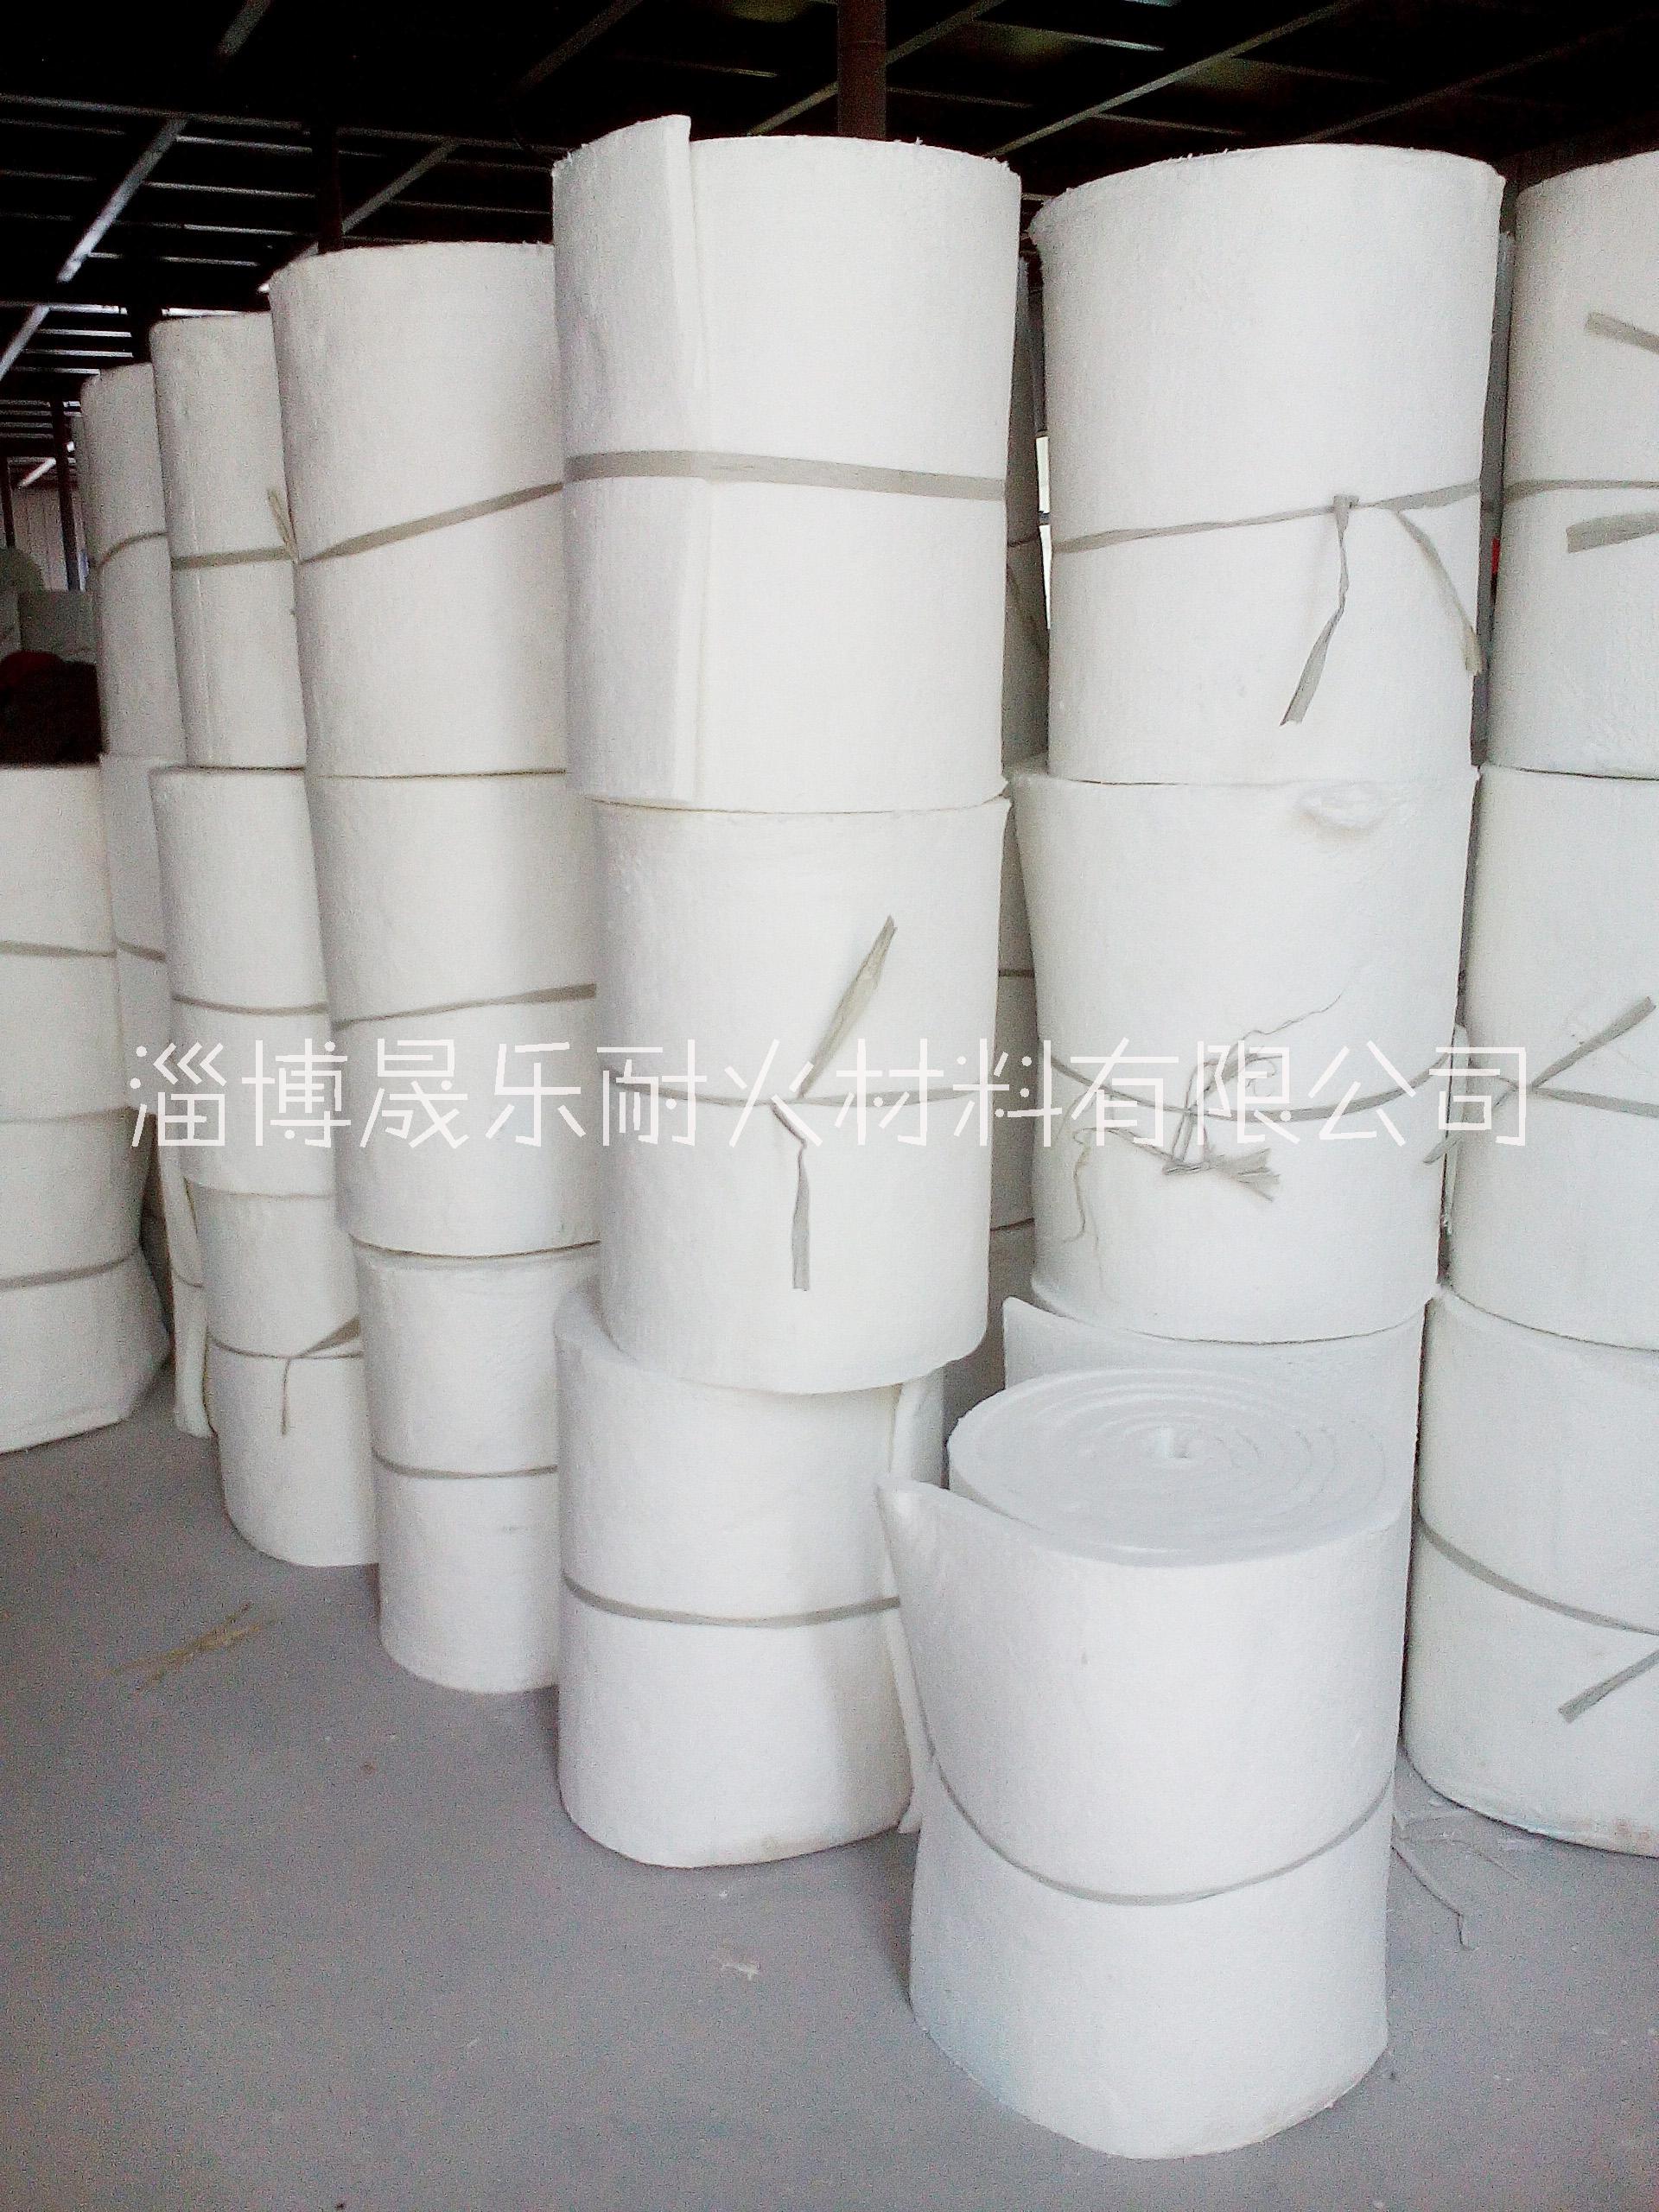 山东硅酸铝纤维毯 淄博硅酸铝纤维毯 硅酸铝纤维毯厂家图片